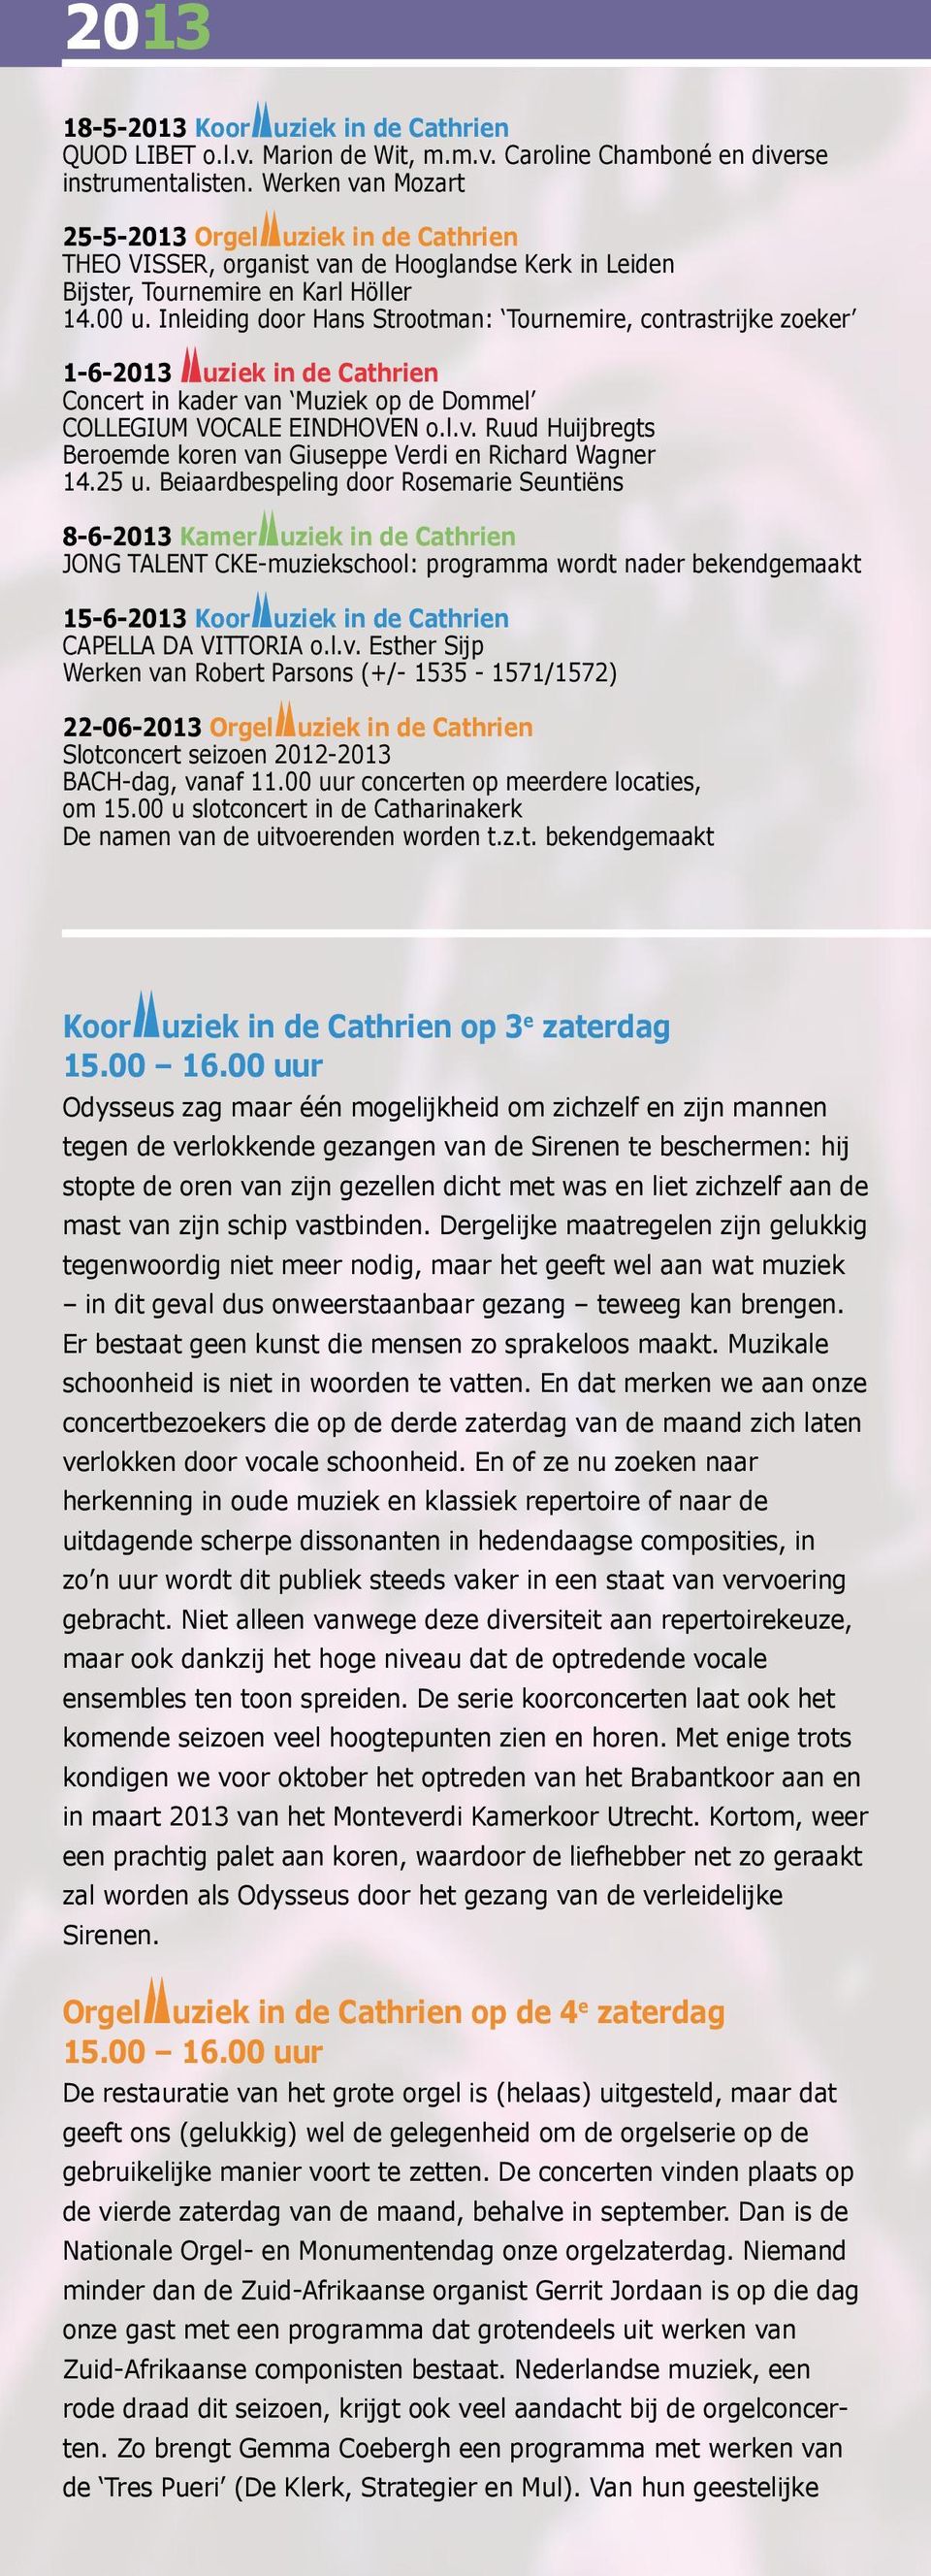 Inleiding door Hans Strootman: Tournemire, contrastrijke zoeker 1-6-2013 uziek in de Cathrien Concert in kader va